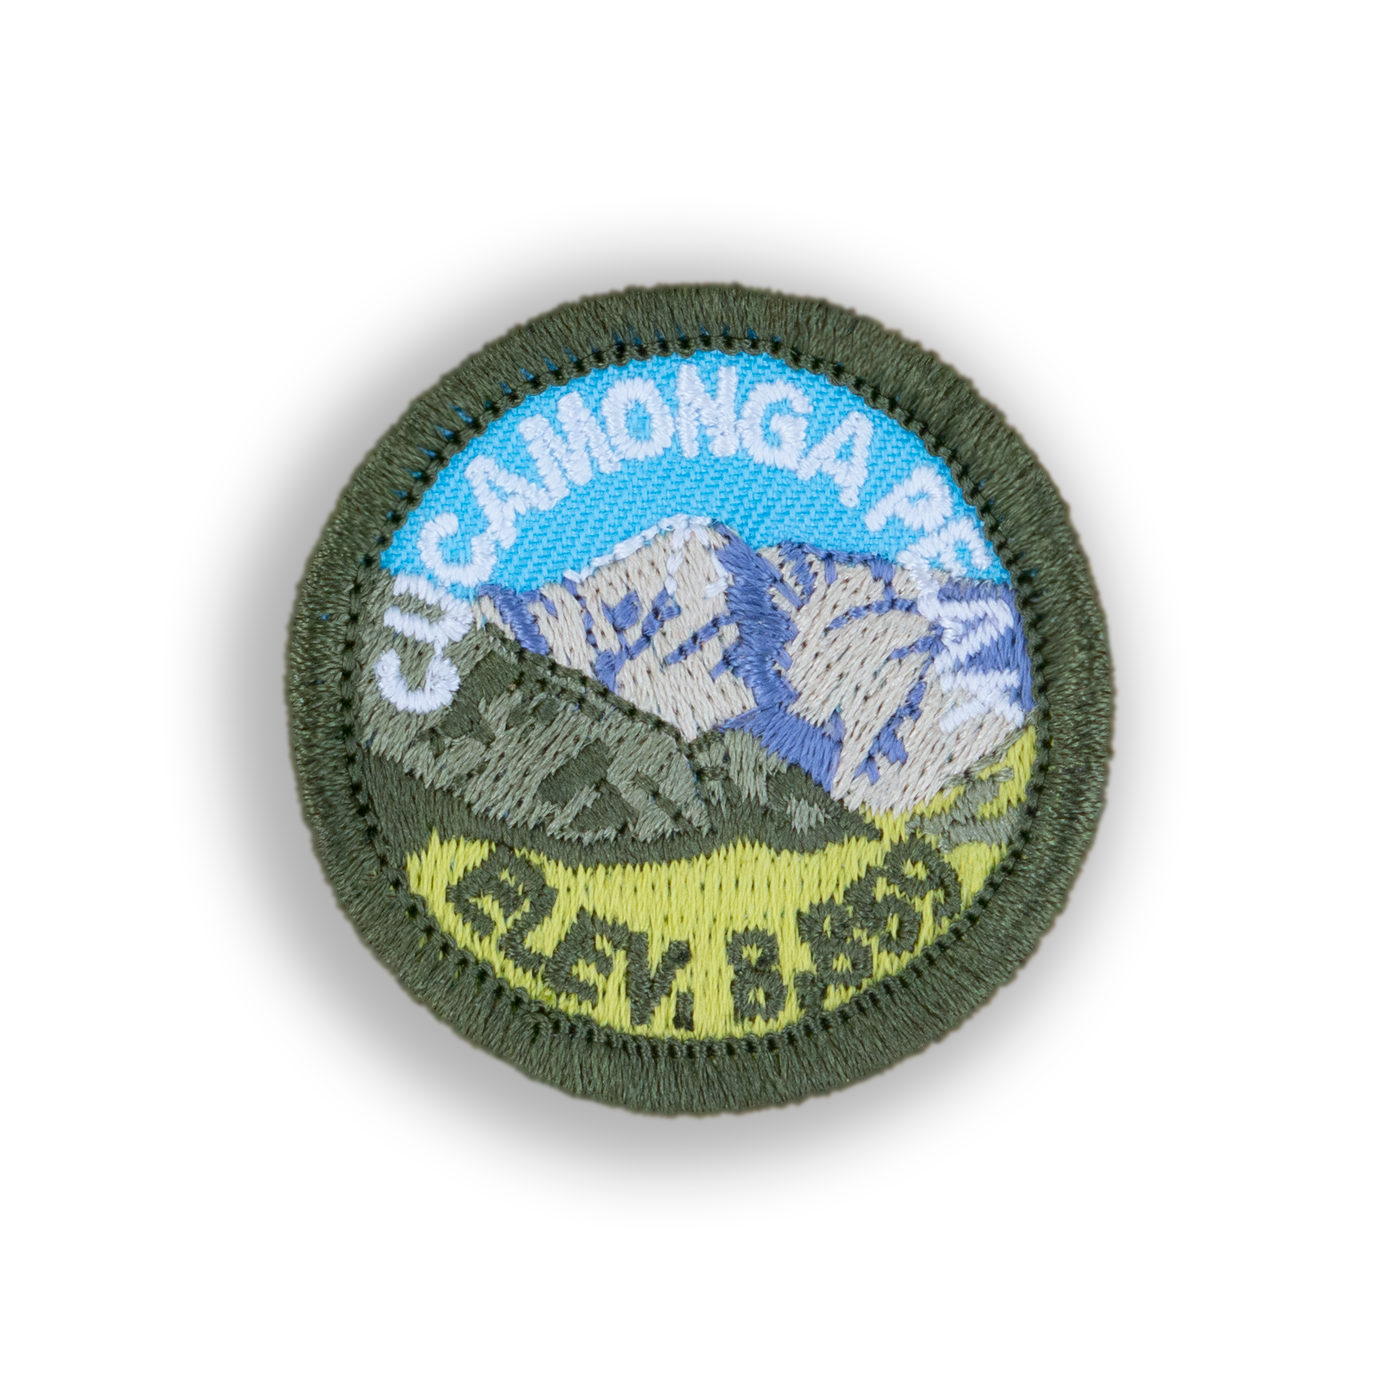 Cucamonga Peak Patch | Demerit Wear - Fake Merit Badges